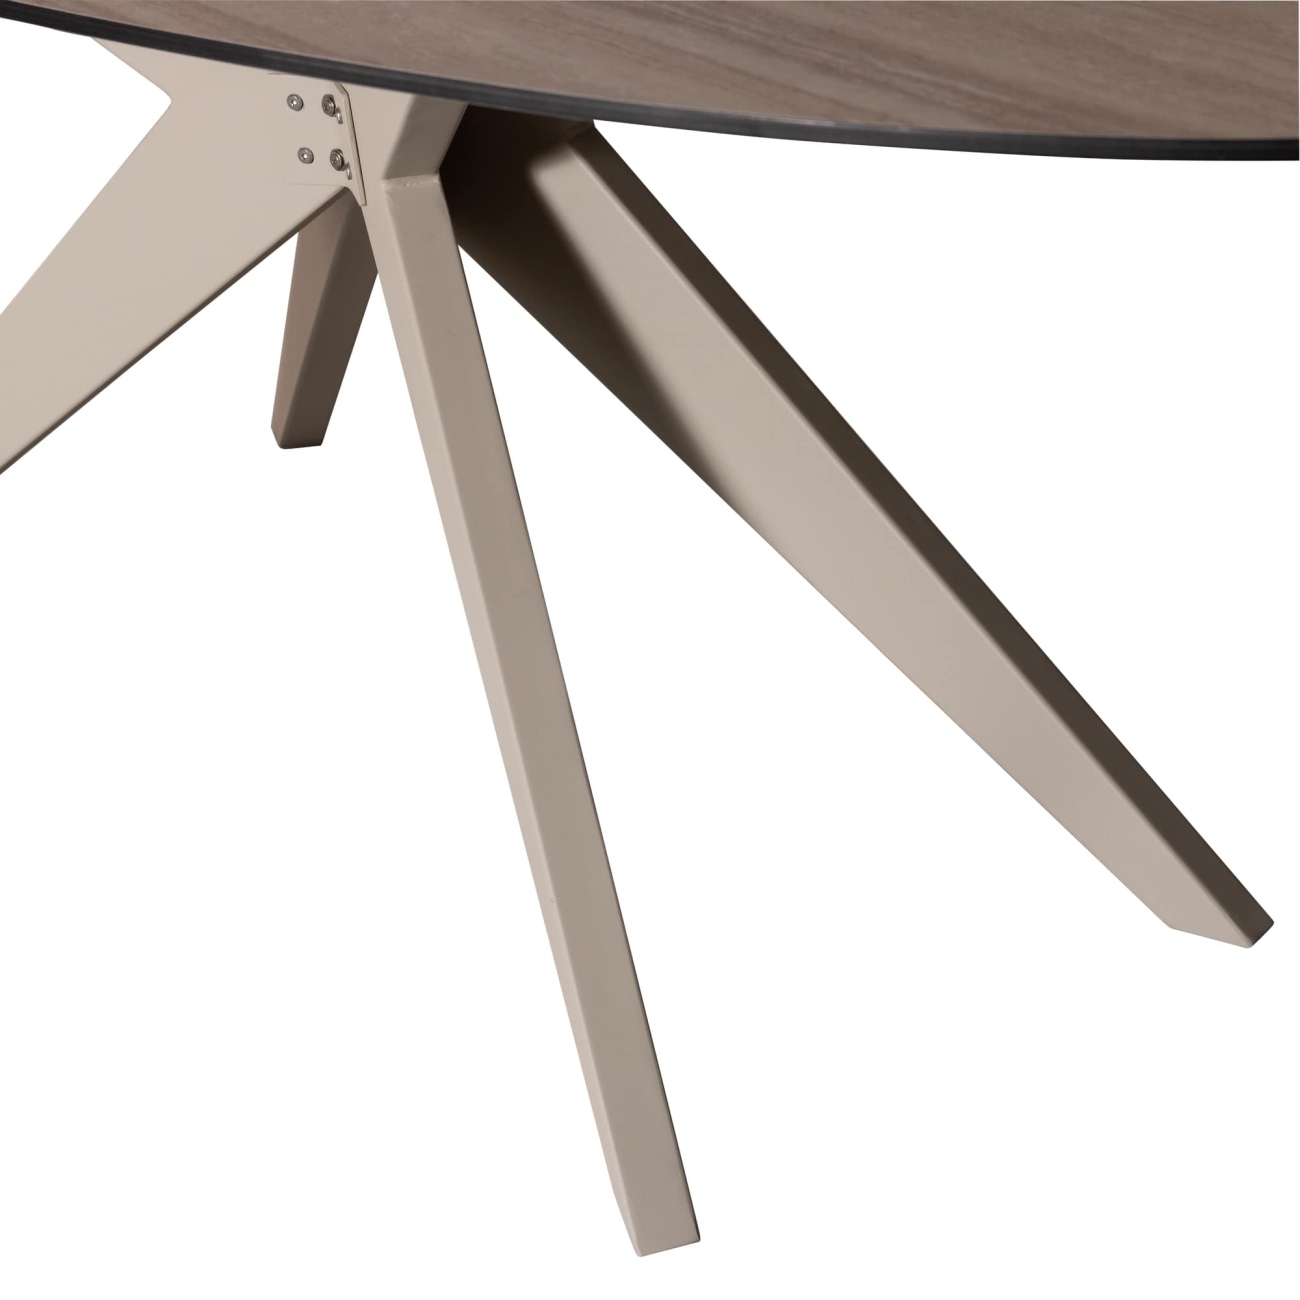 Der Gartenesstisch Elk überzeugt mit seinem modernen Design. Gefertigt wurde er aus HPL, welches einen Sand Farbton besitzt. Das Gestell ist aus Aluminium und hat eine Sand Farbe. Der Esstisch besitzt eine Größe von 220x100 cm.